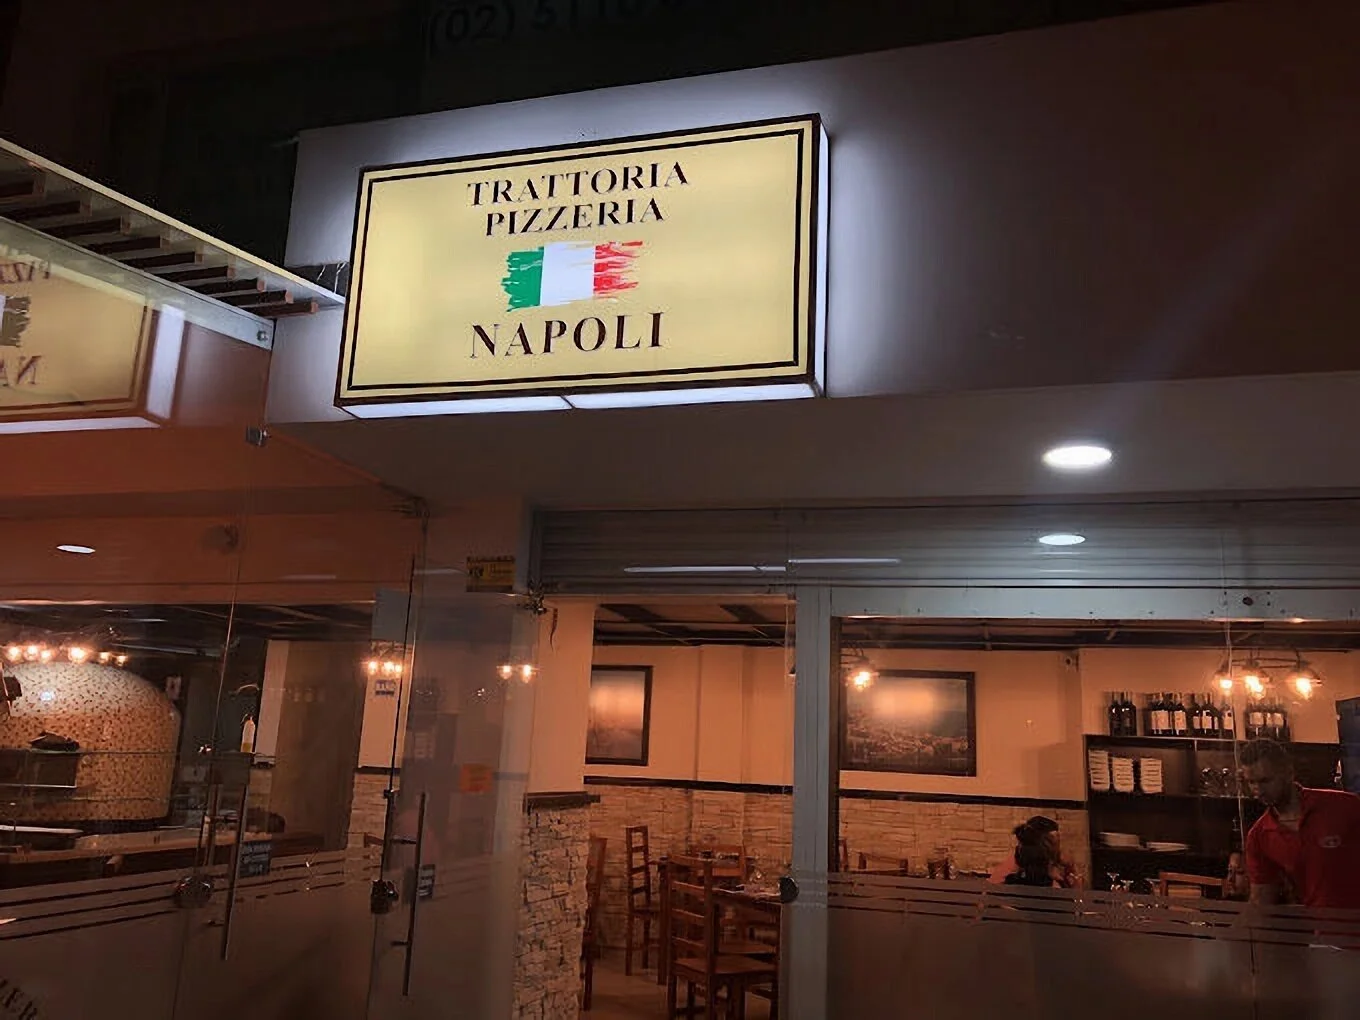 Restaurantes-trattoria-pizzeria-napoli-17673